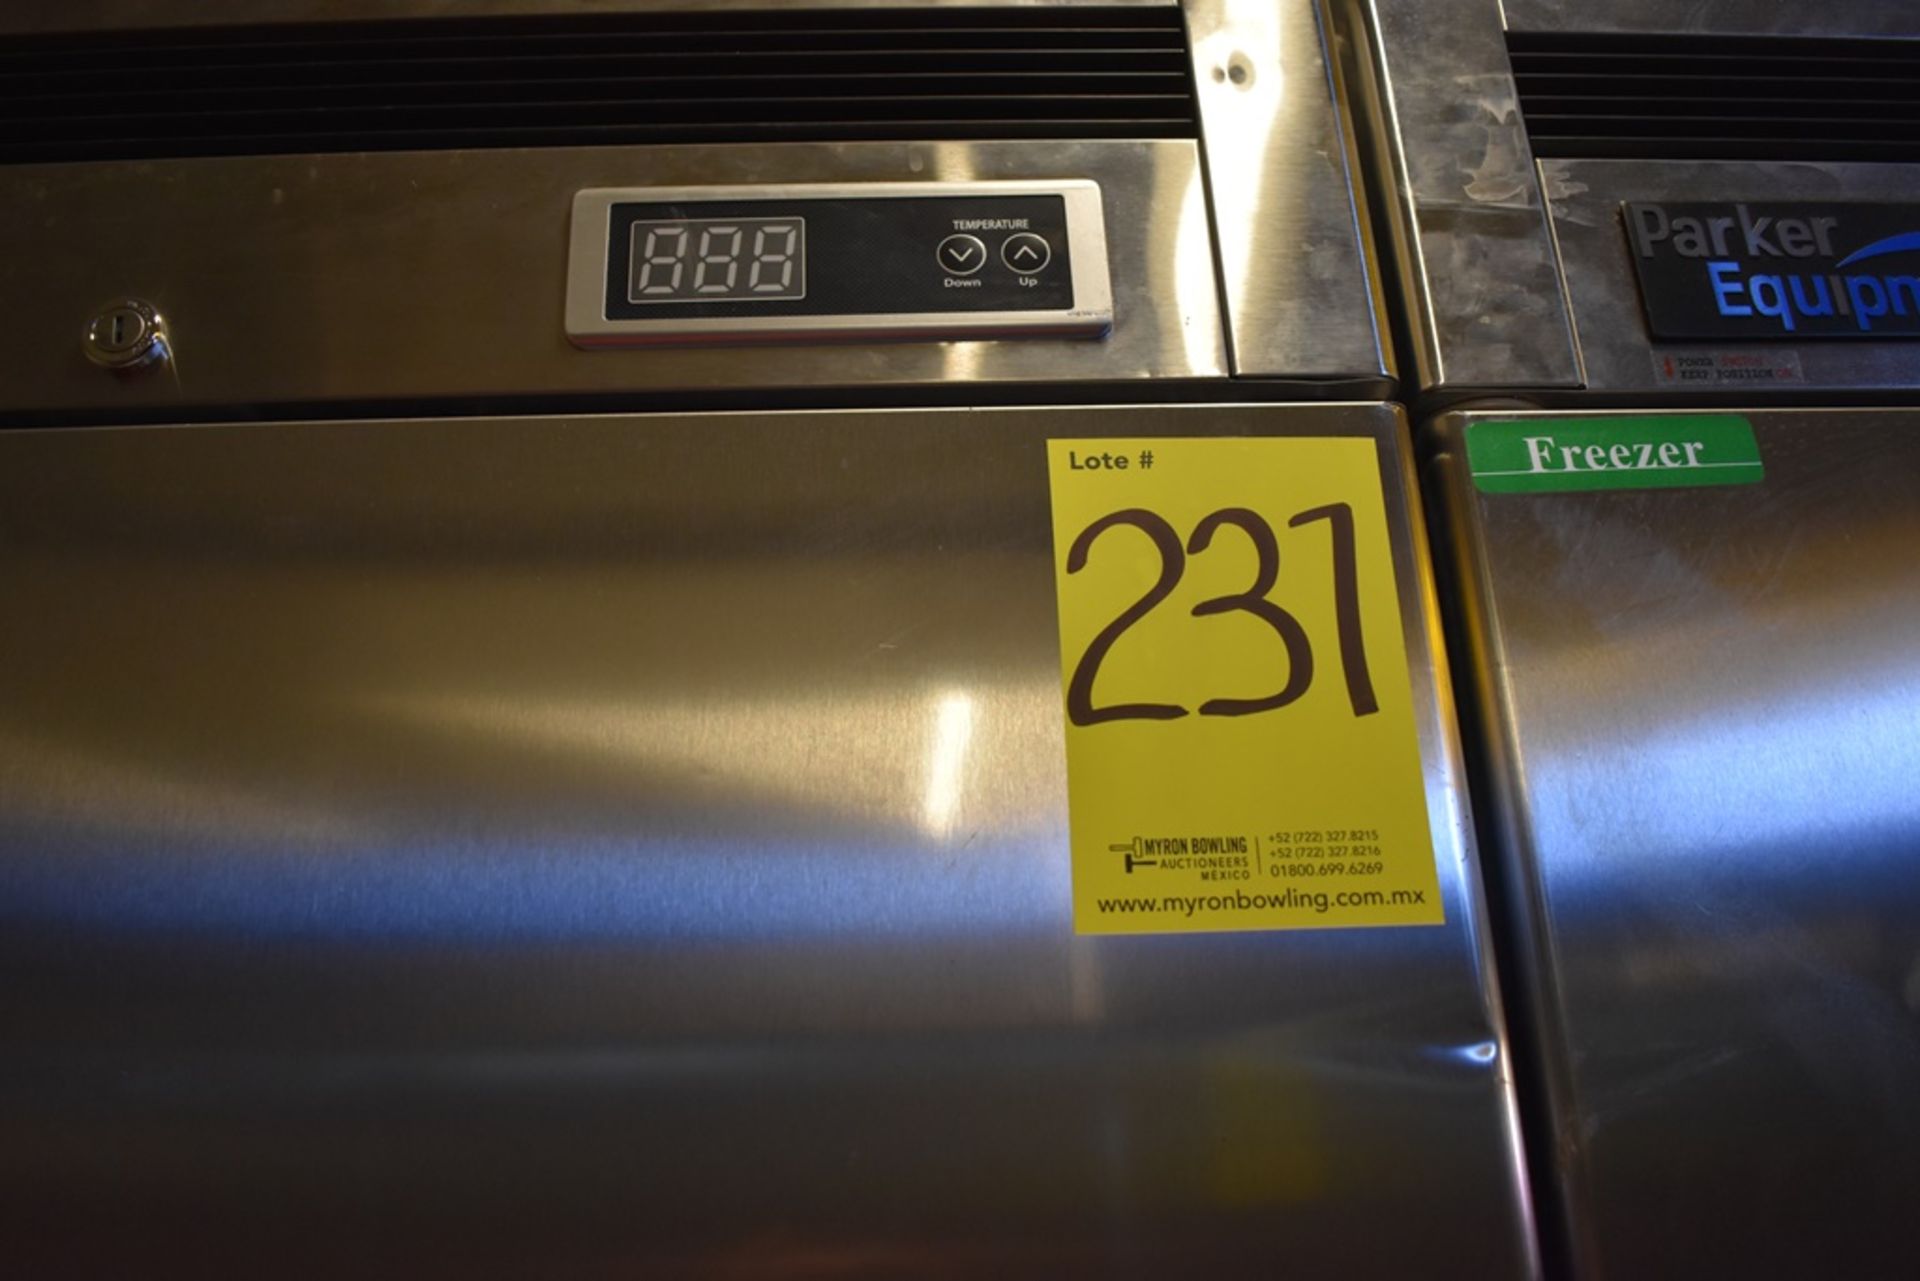 Refrigerador en acero inoxidable de dos puertas abatibles marca Parker Equipment - Image 14 of 16